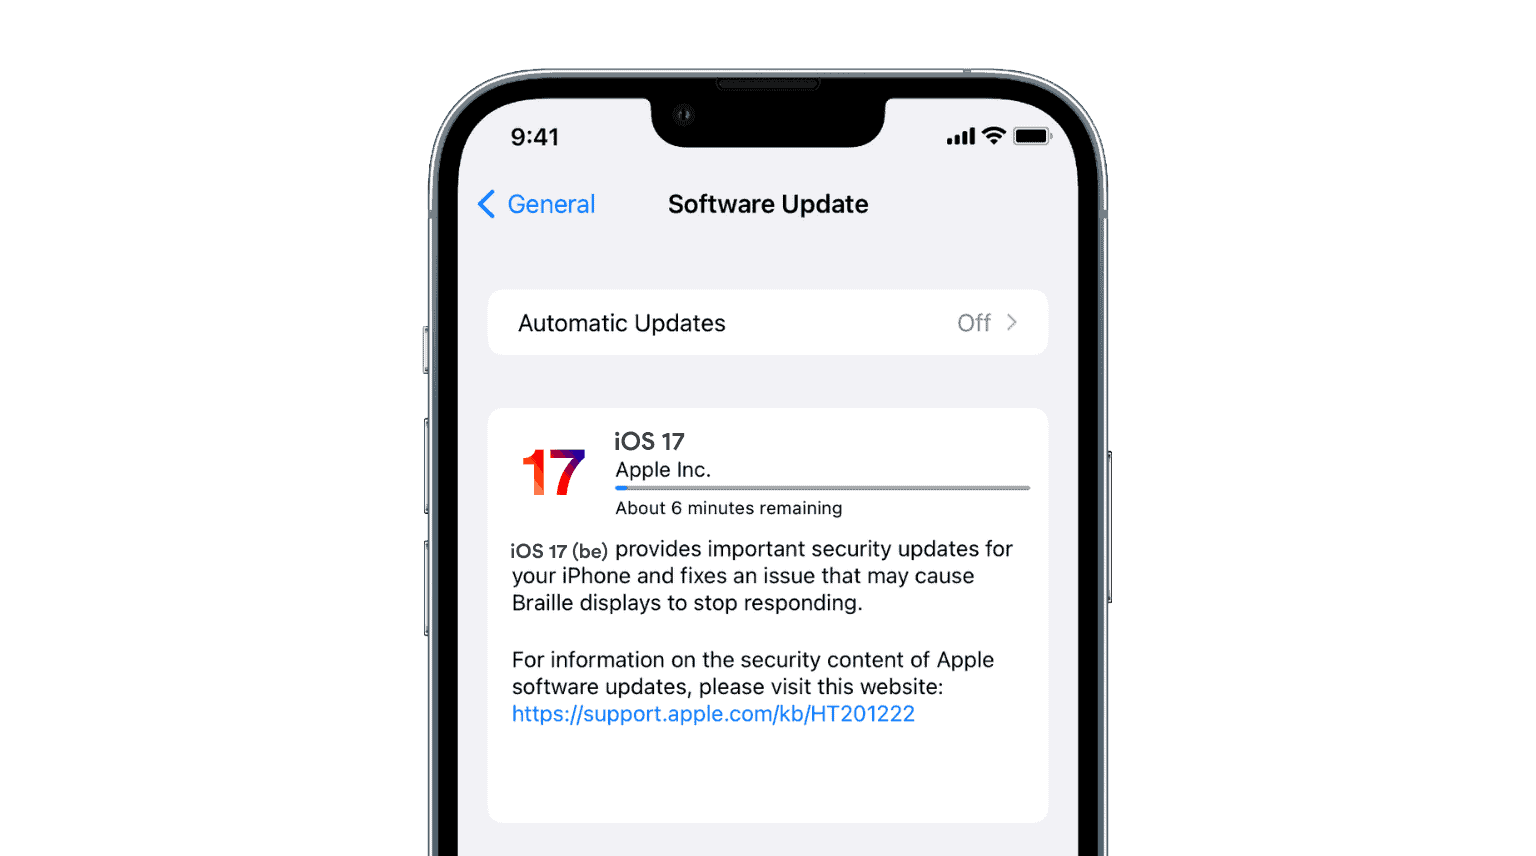 iOS 17 Update